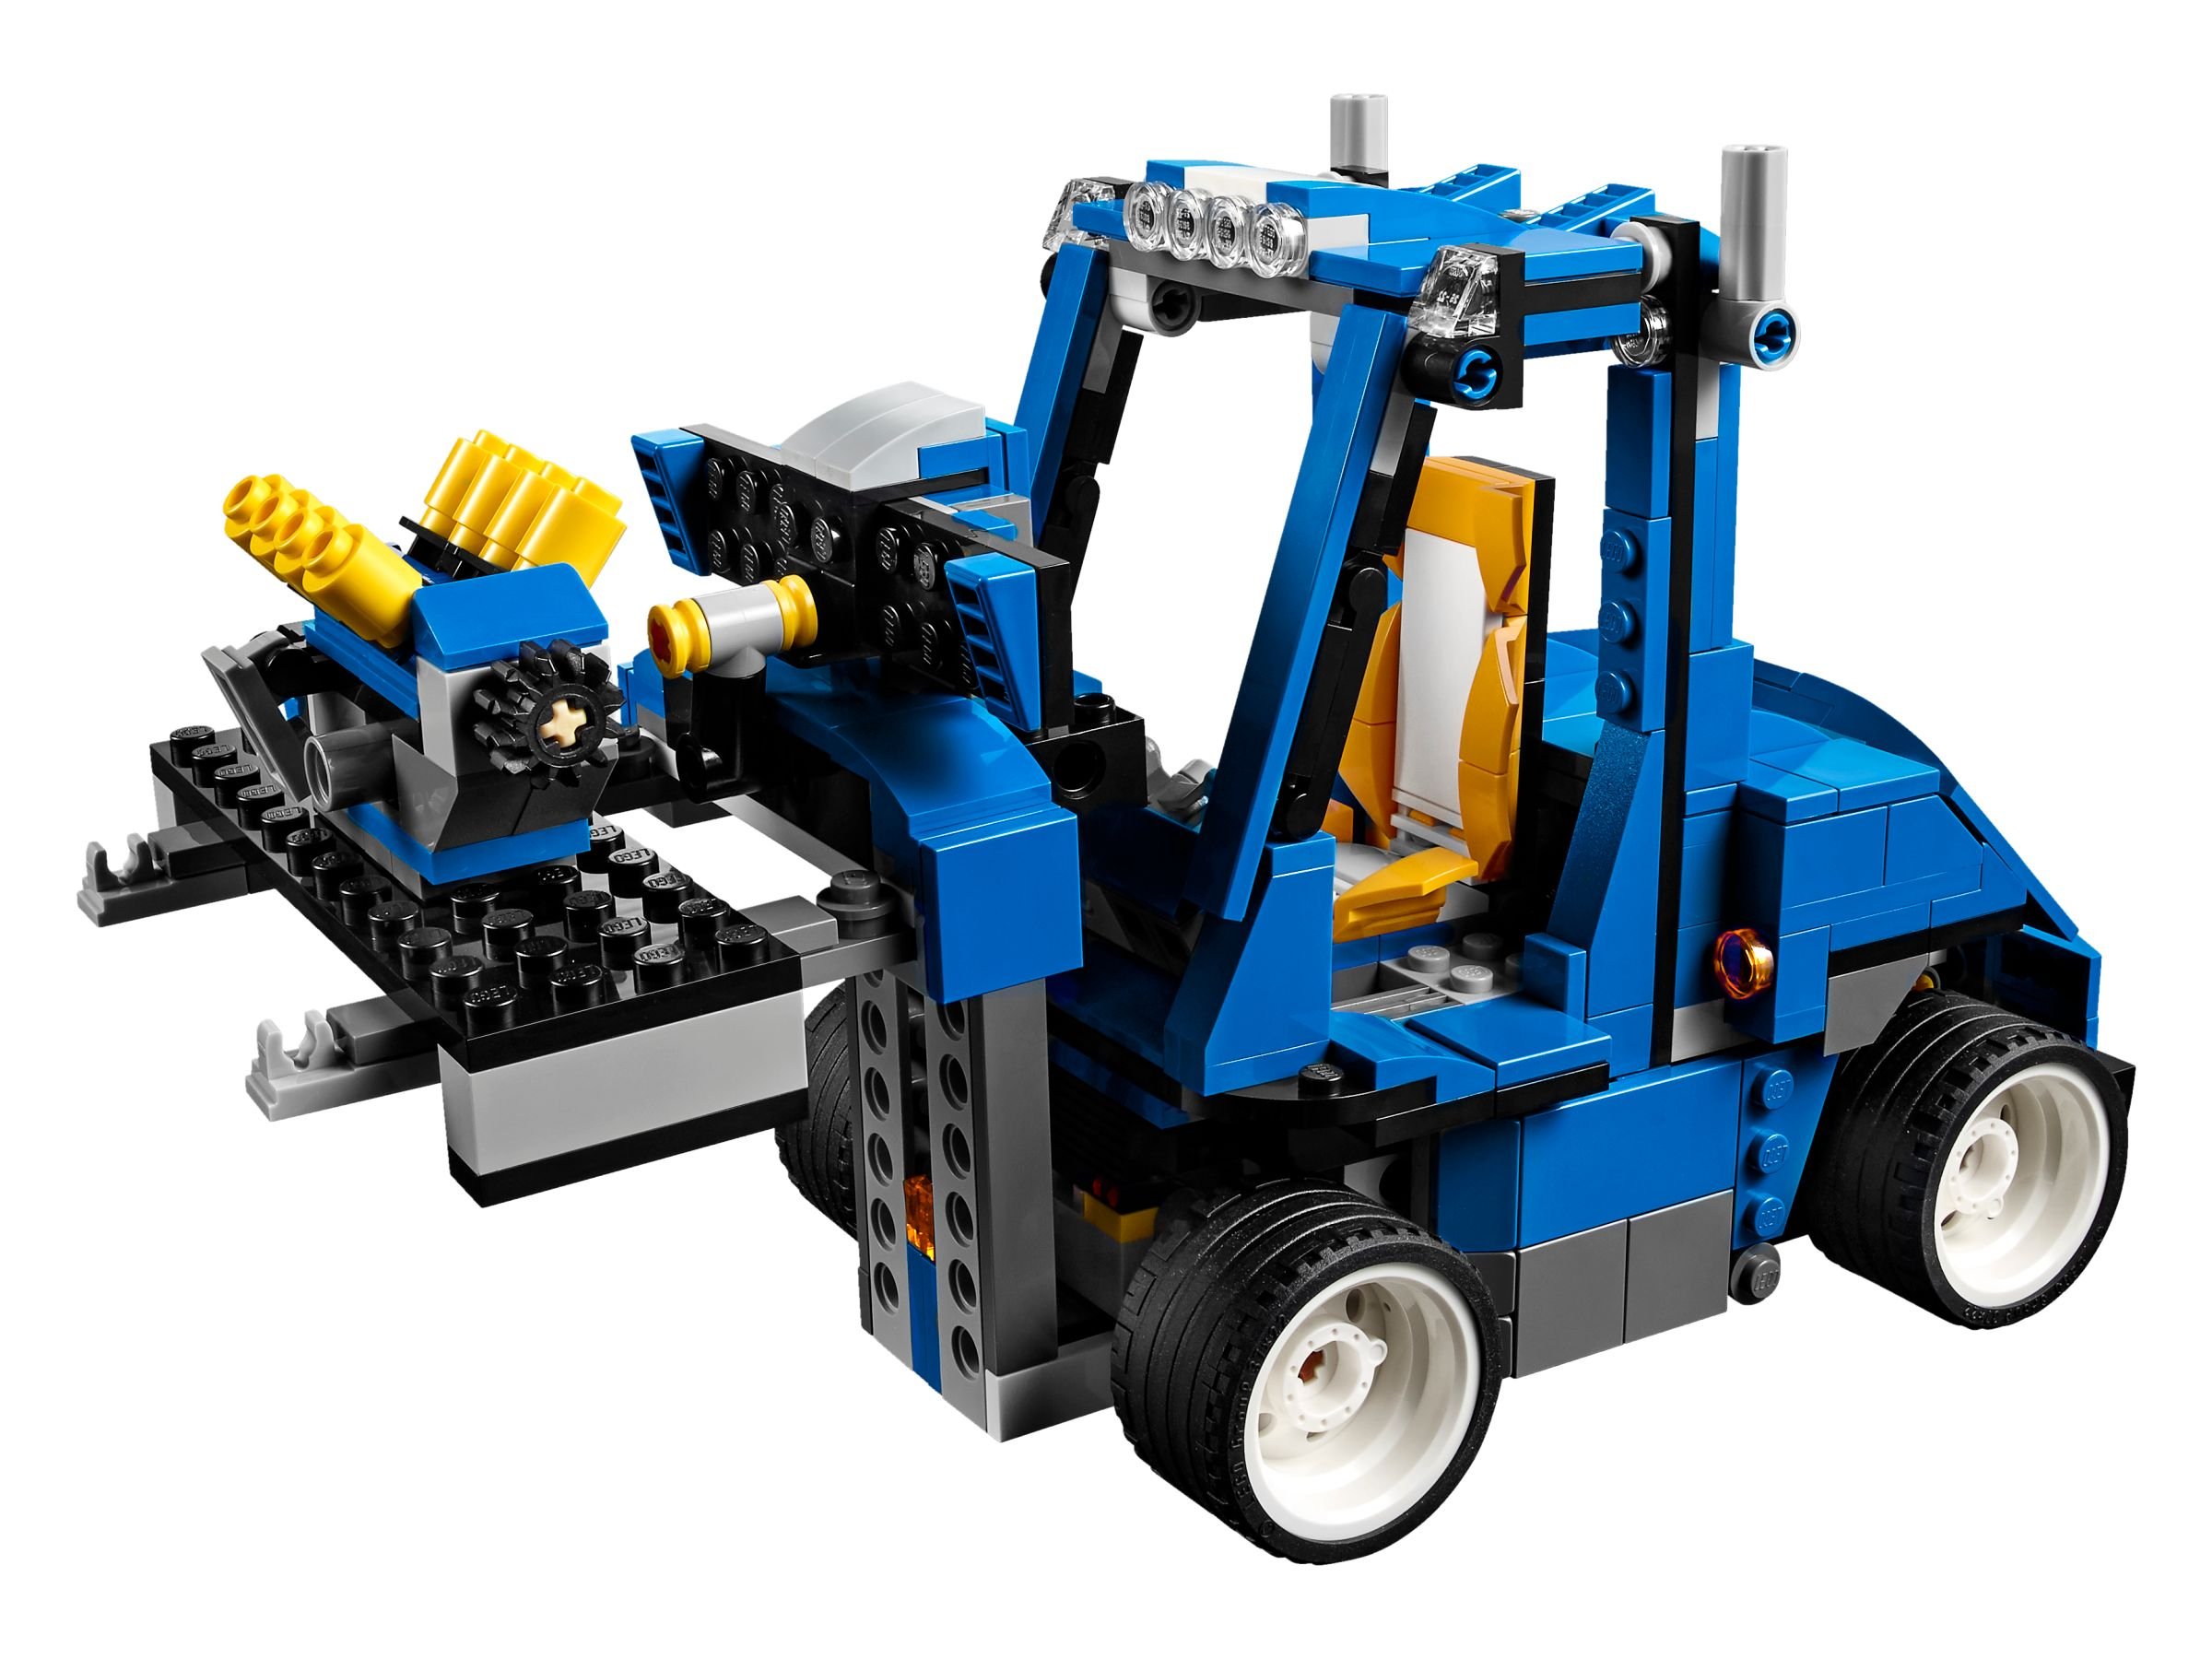 LEGO Creator 31070 Turborennwagen LEGO_31070_alt7.jpg